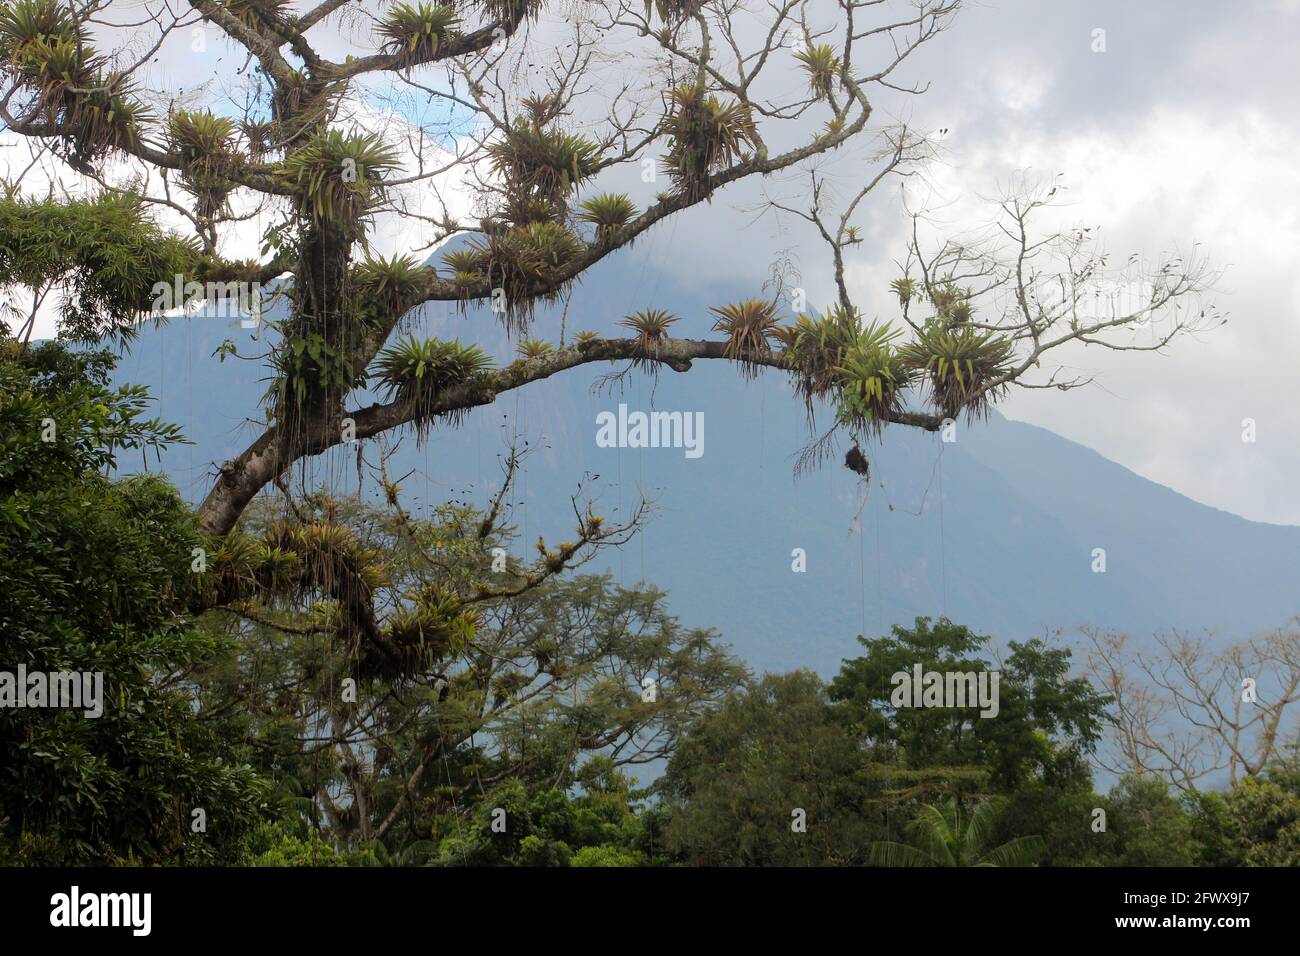 Guapuruvu, grande árvore da mata Atlântica, de crescimento muito rápido Foto Stock